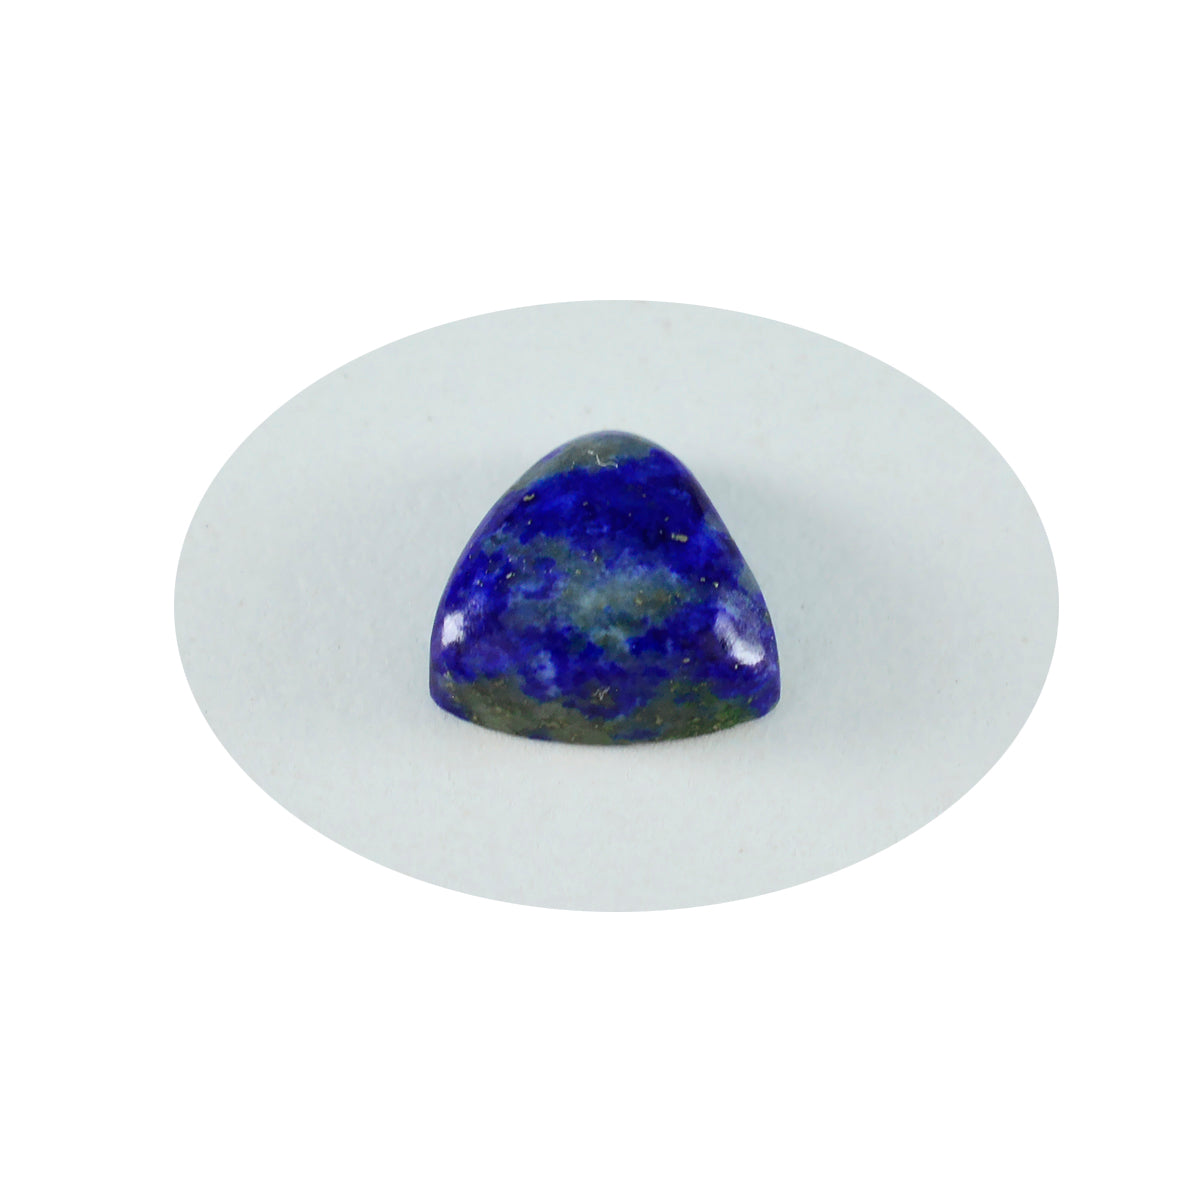 Riyogems 1 Stück blauer Lapislazuli-Cabochon, 11 x 11 mm, Billionenform, schöner Qualitätsstein